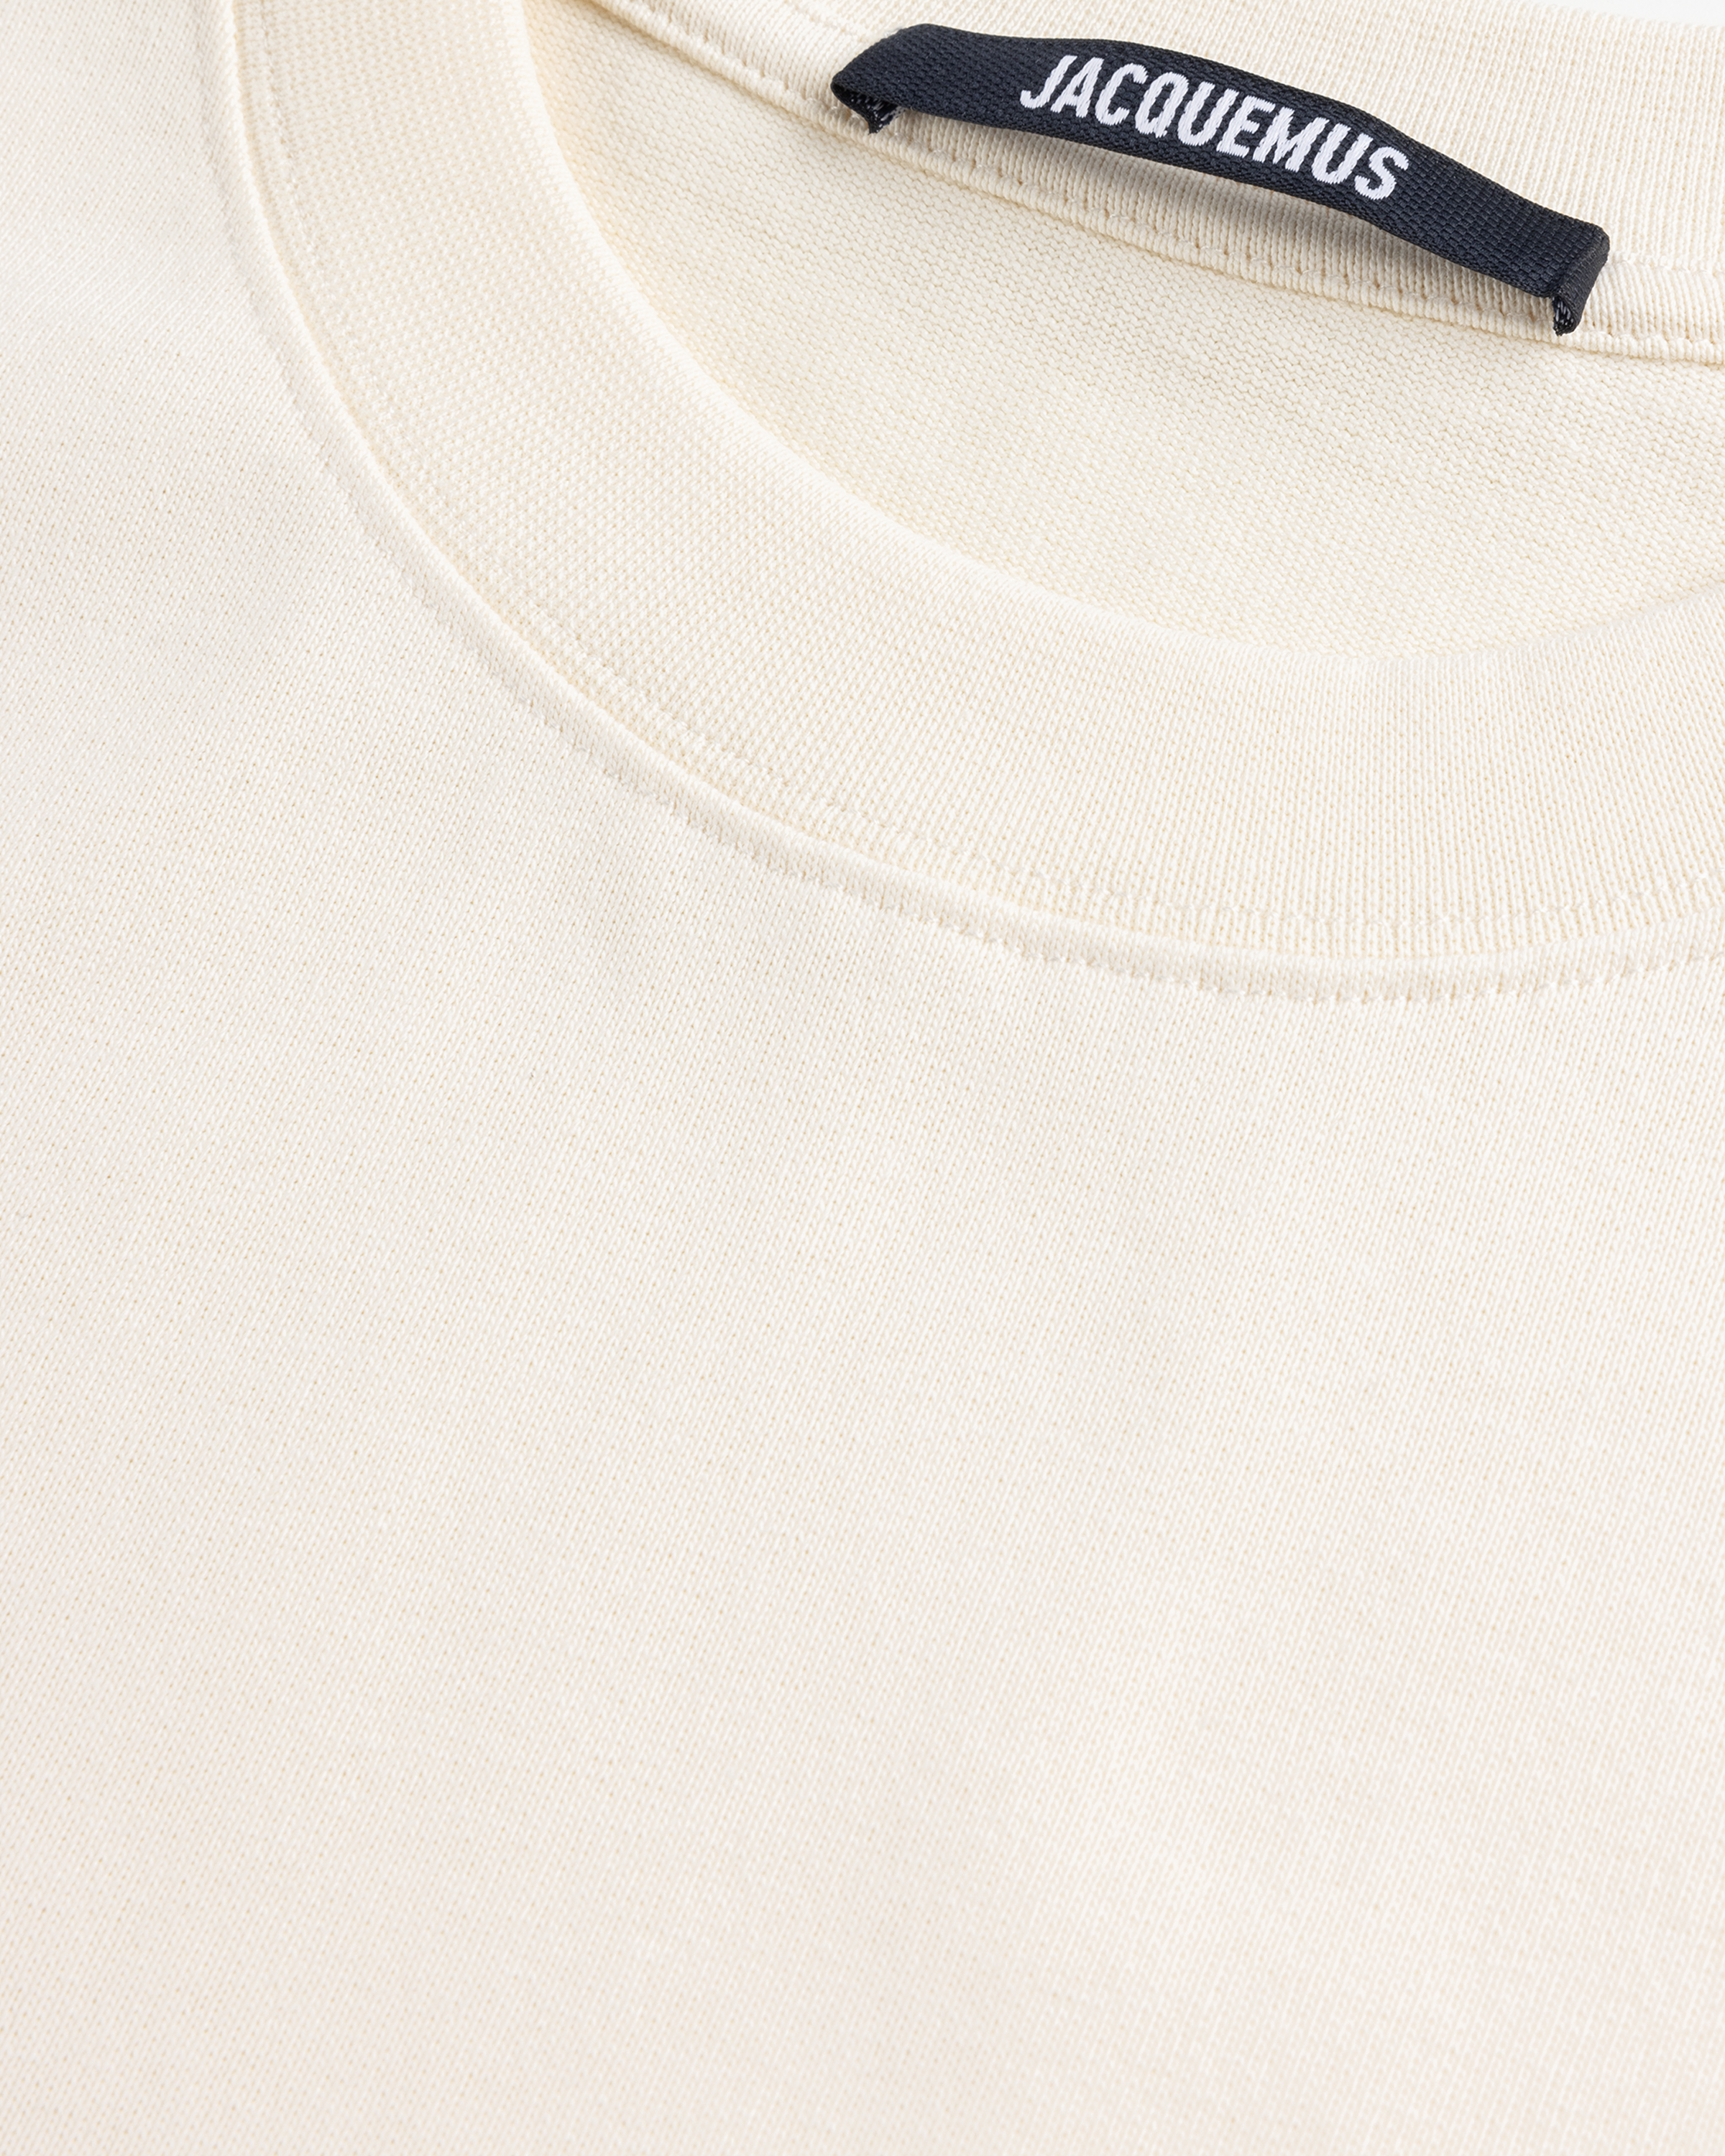 JACQUEMUS – Le T-Shirt Gros Grain Beige - T-Shirts - Beige - Image 7